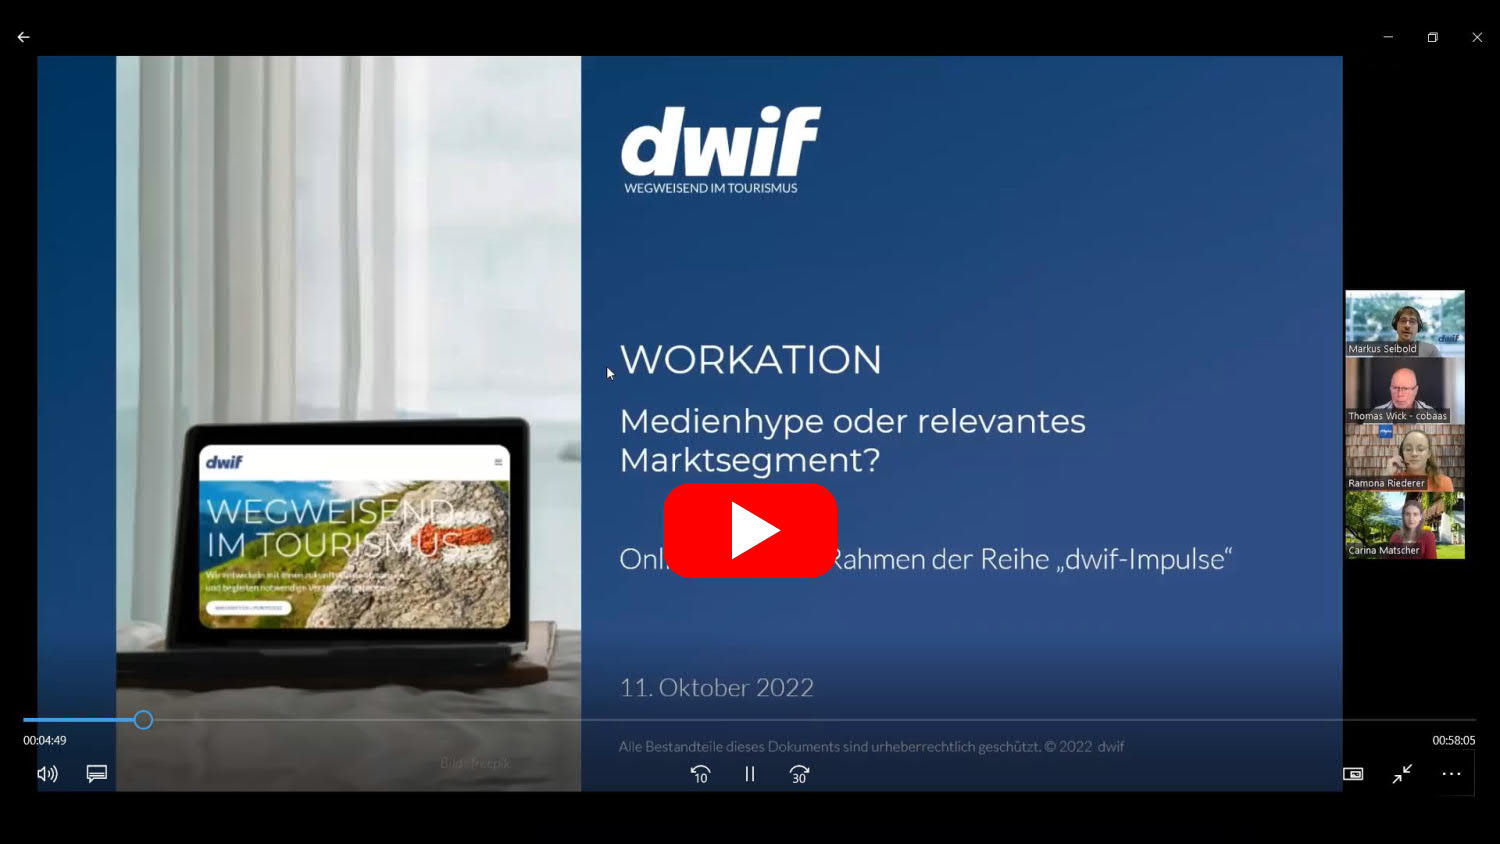 dwif-Impuls Workation - Medienhype oder relevantes Marktsegment?